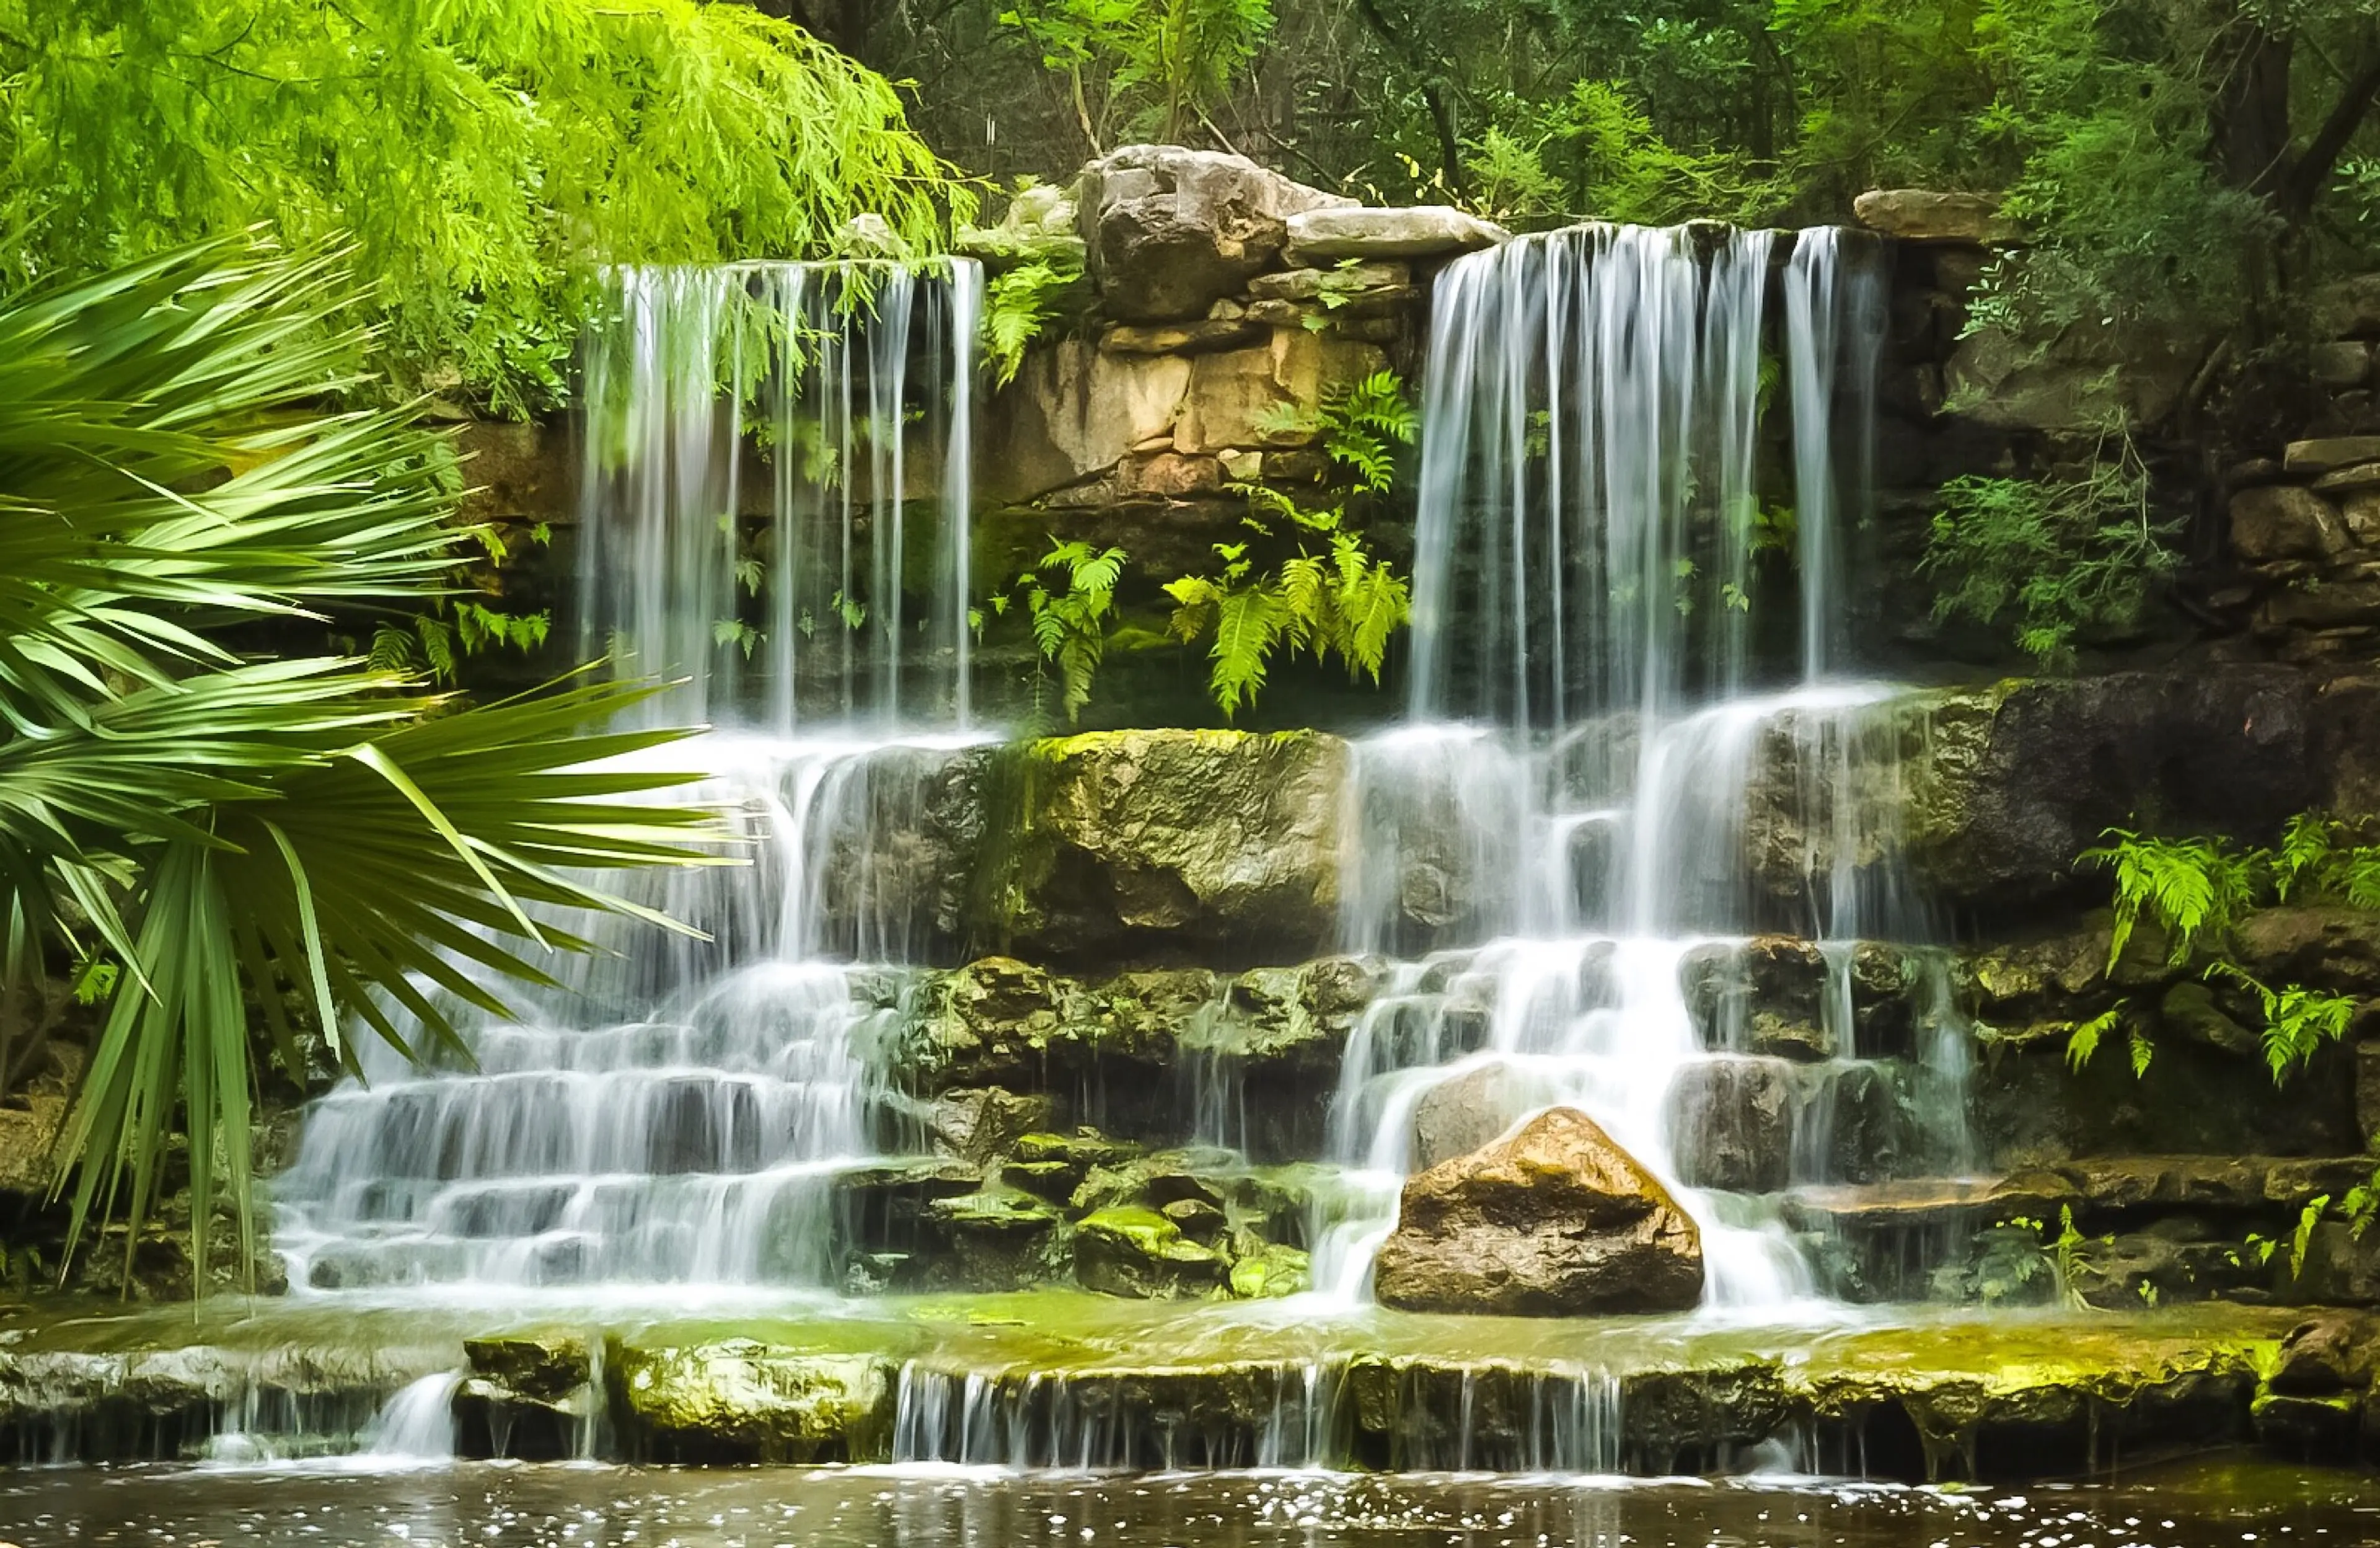 The waterfalls in Prehistoric Park in Zilker Botanical Garden